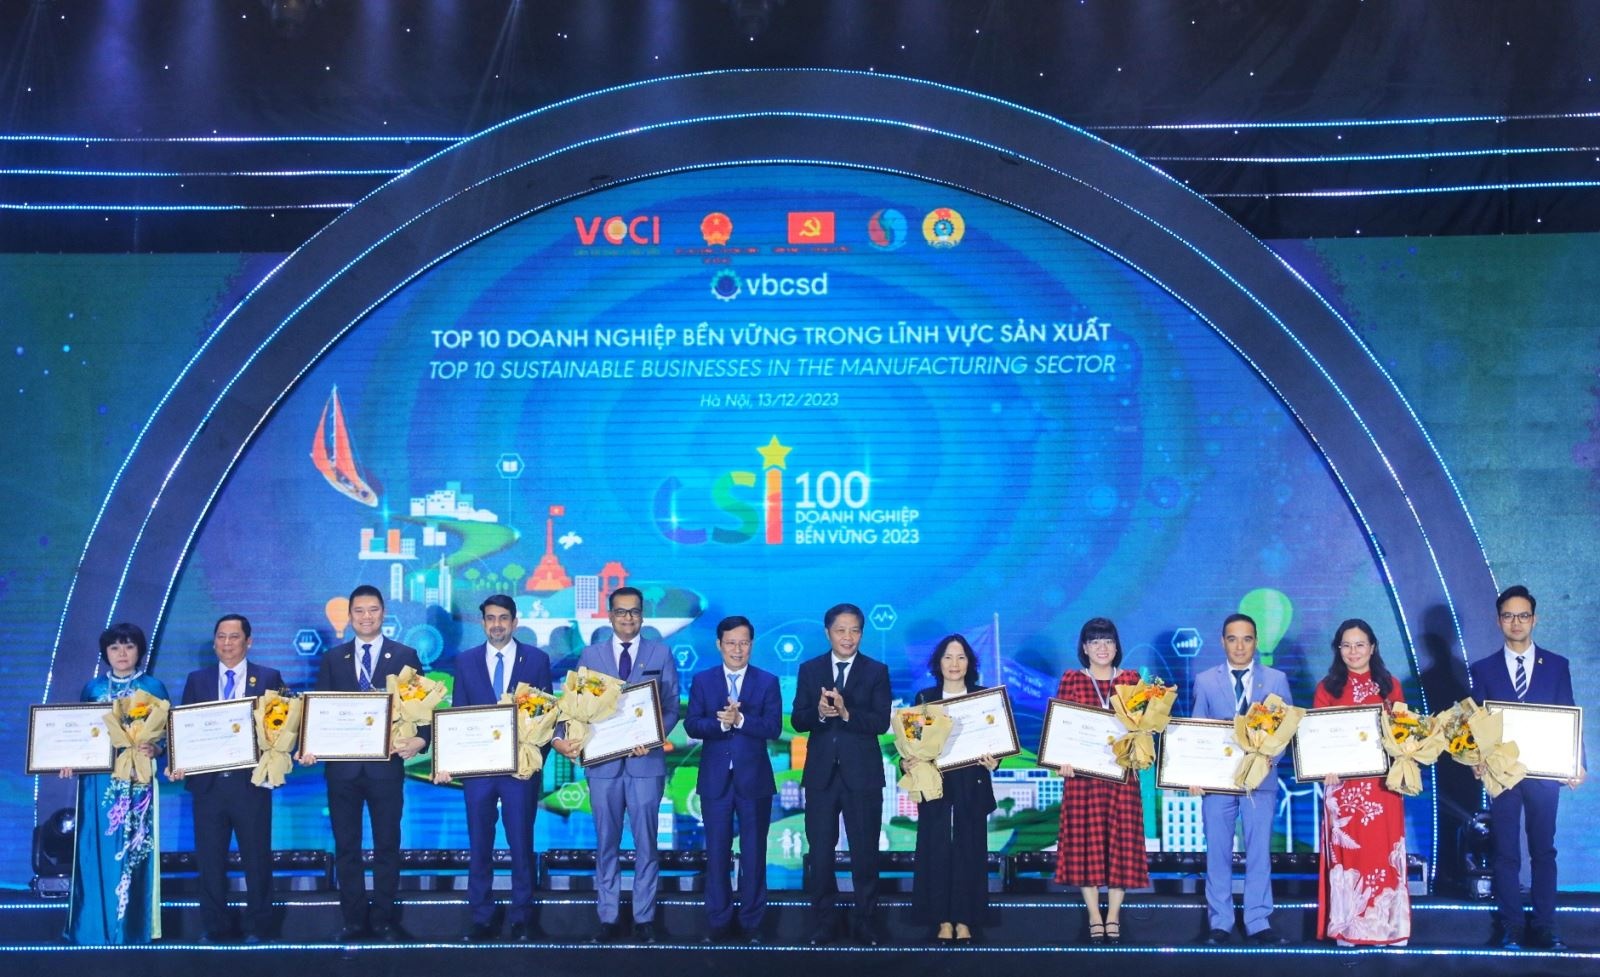 Ông Trần Tuấn Anh, Ủy viên Bộ Chính trị, Trưởng ban Kinh tế Trung ương và ông Phạm Tấn Công, Chủ tịch VCCI trao chứng nhận cho các doanh nghiệp.